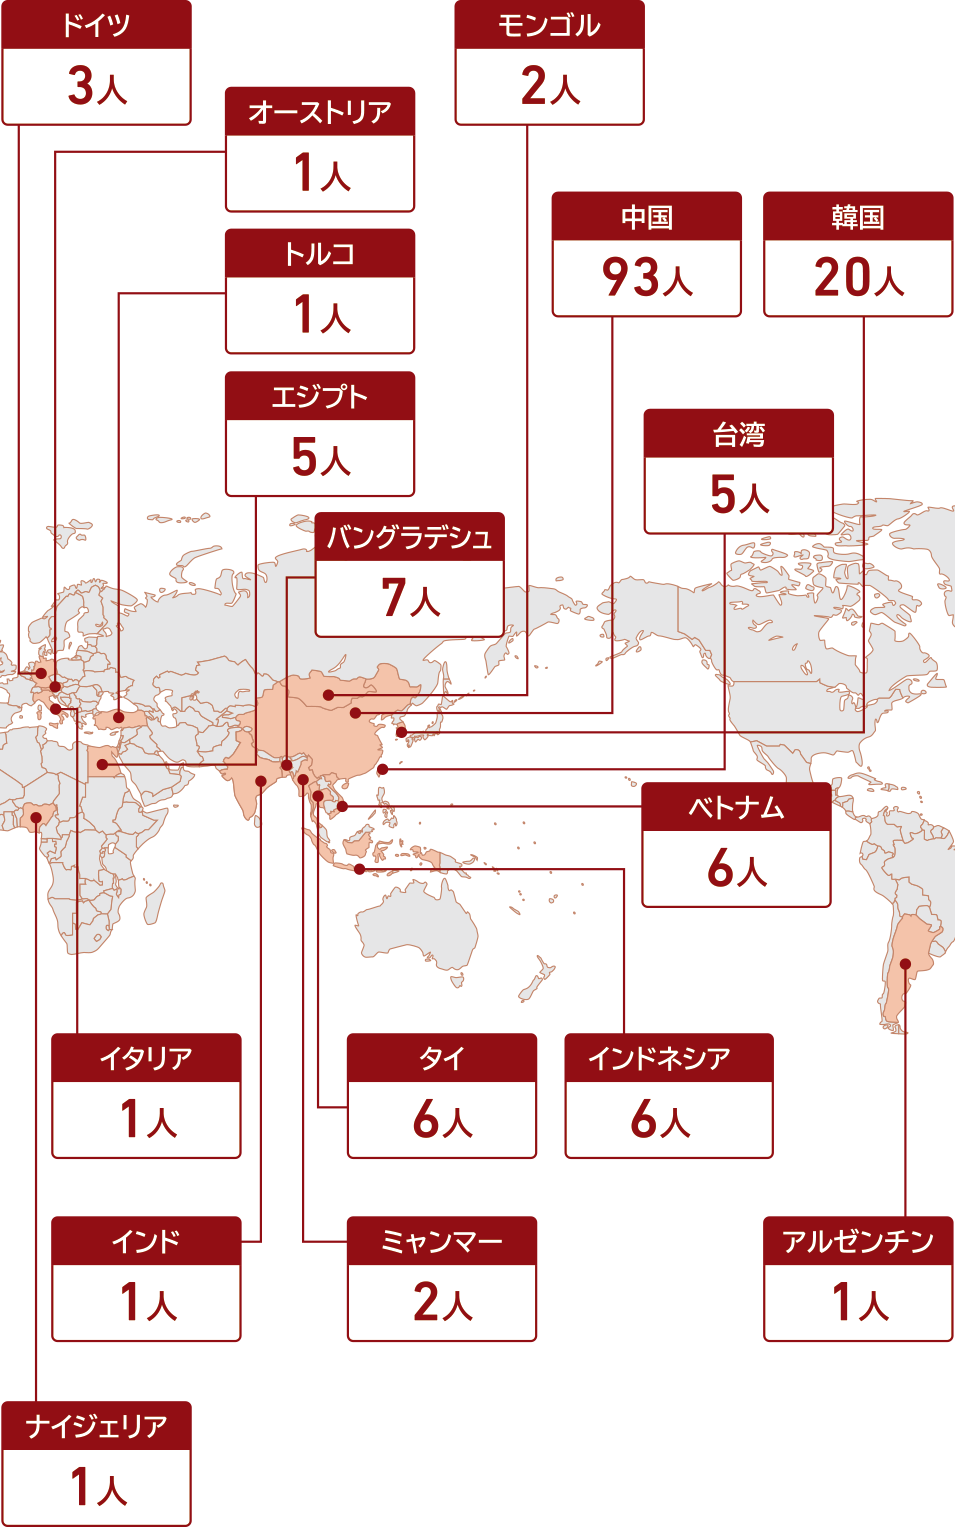 国別留学生数のグラフ